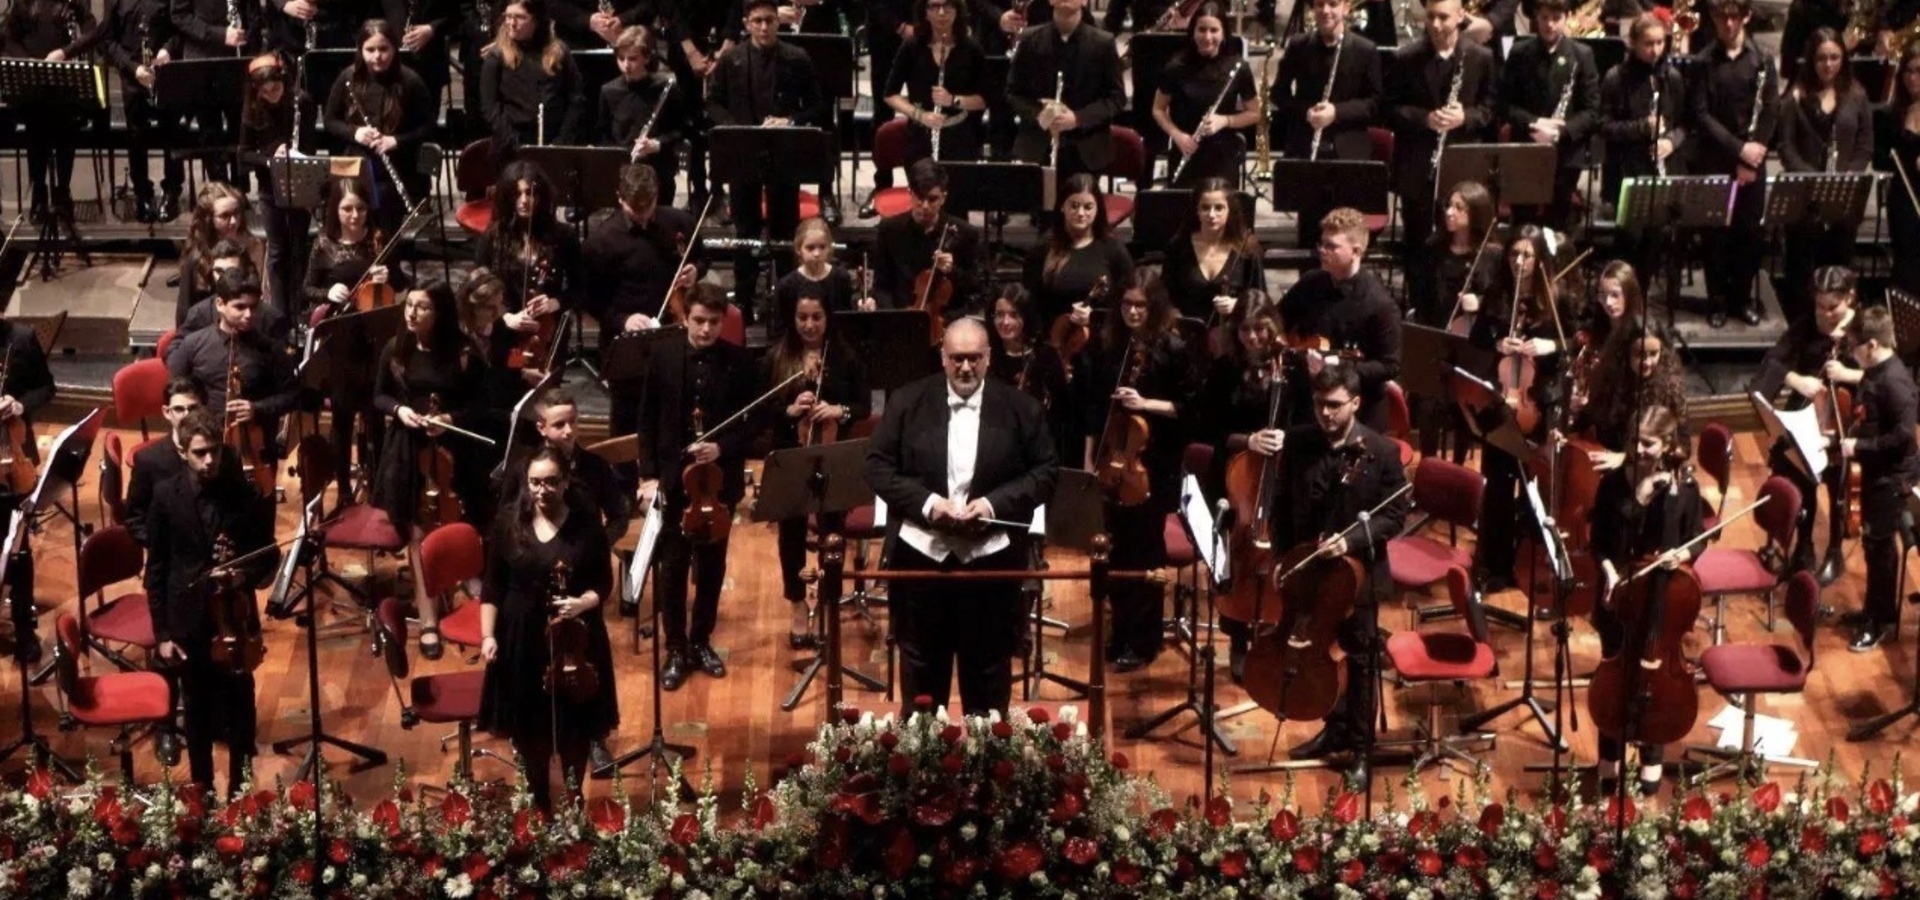 ilSicilia.it – Settimana Internazionale di Musica Sacra di Monreale (Pa): 200 giovanissimi talenti in concerto